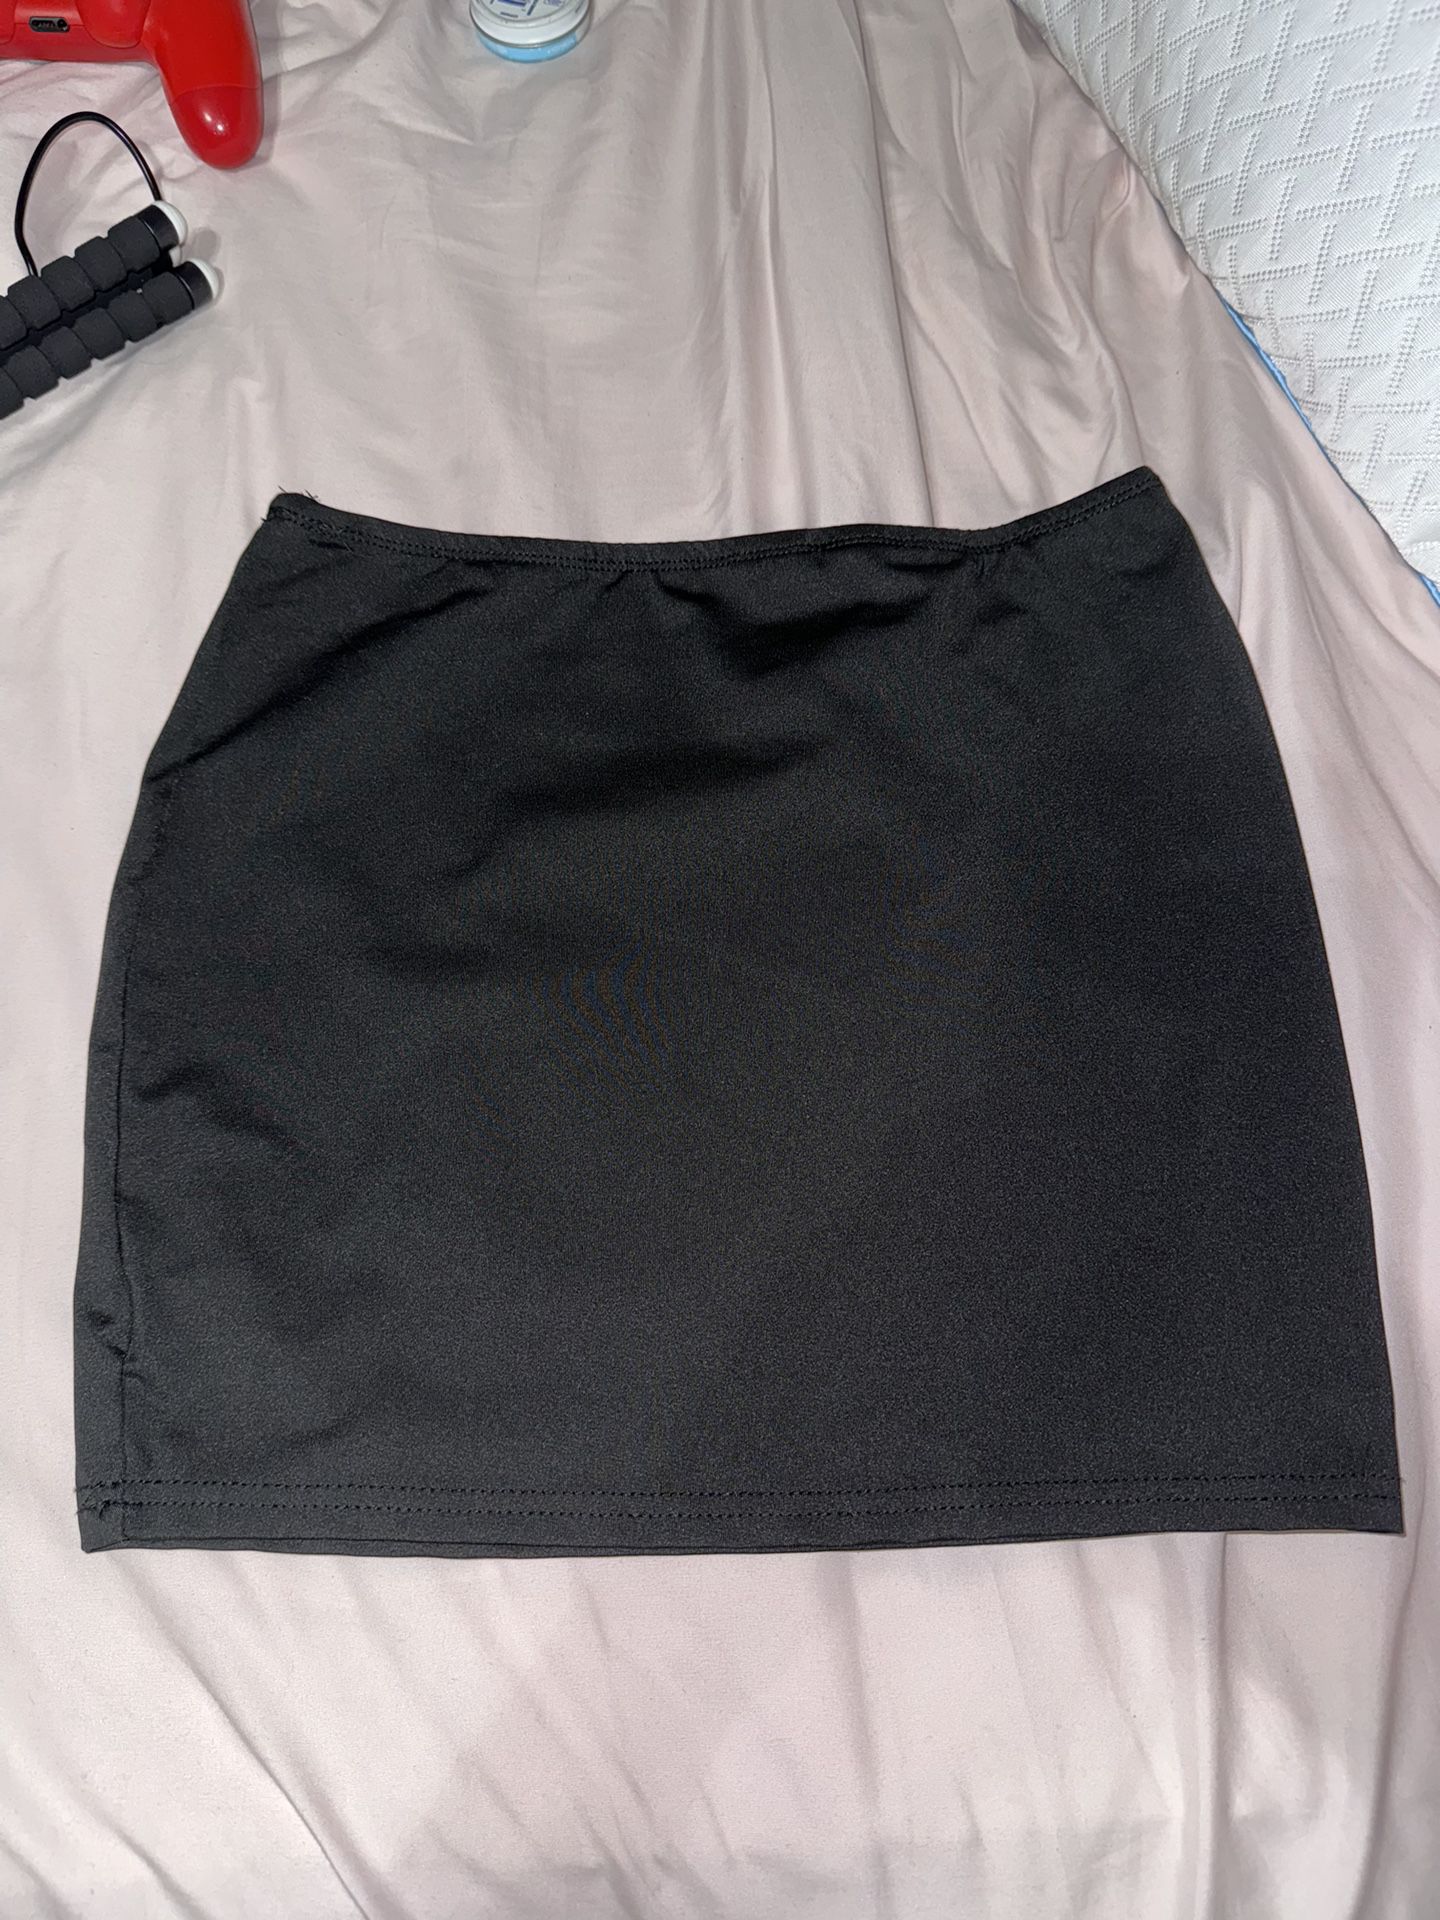 Plain Black Skirt 